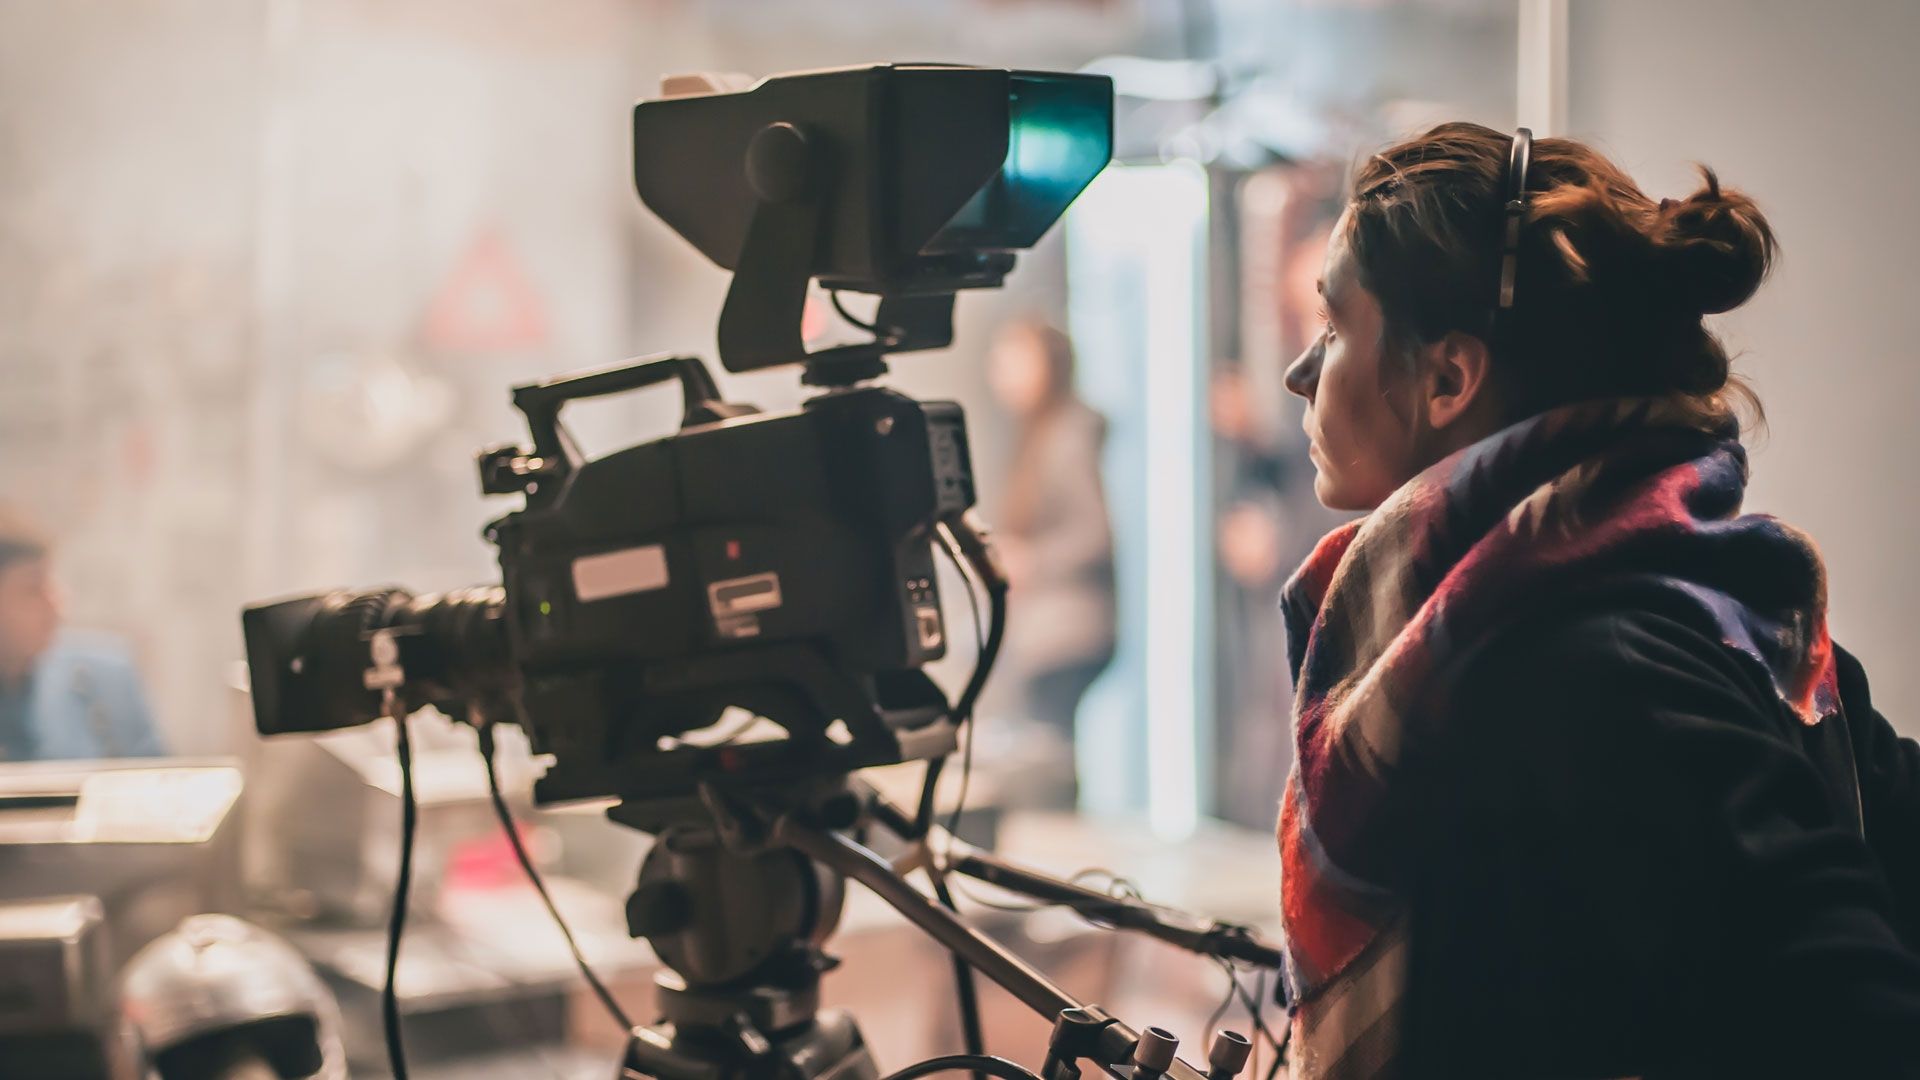 Công nghiệp điện ảnh, truyền hình với sự phát triển đa dạng nền tảng công nghệ đang mở ra cơ hội nghề nghiệp rộng mở cho người làm phim